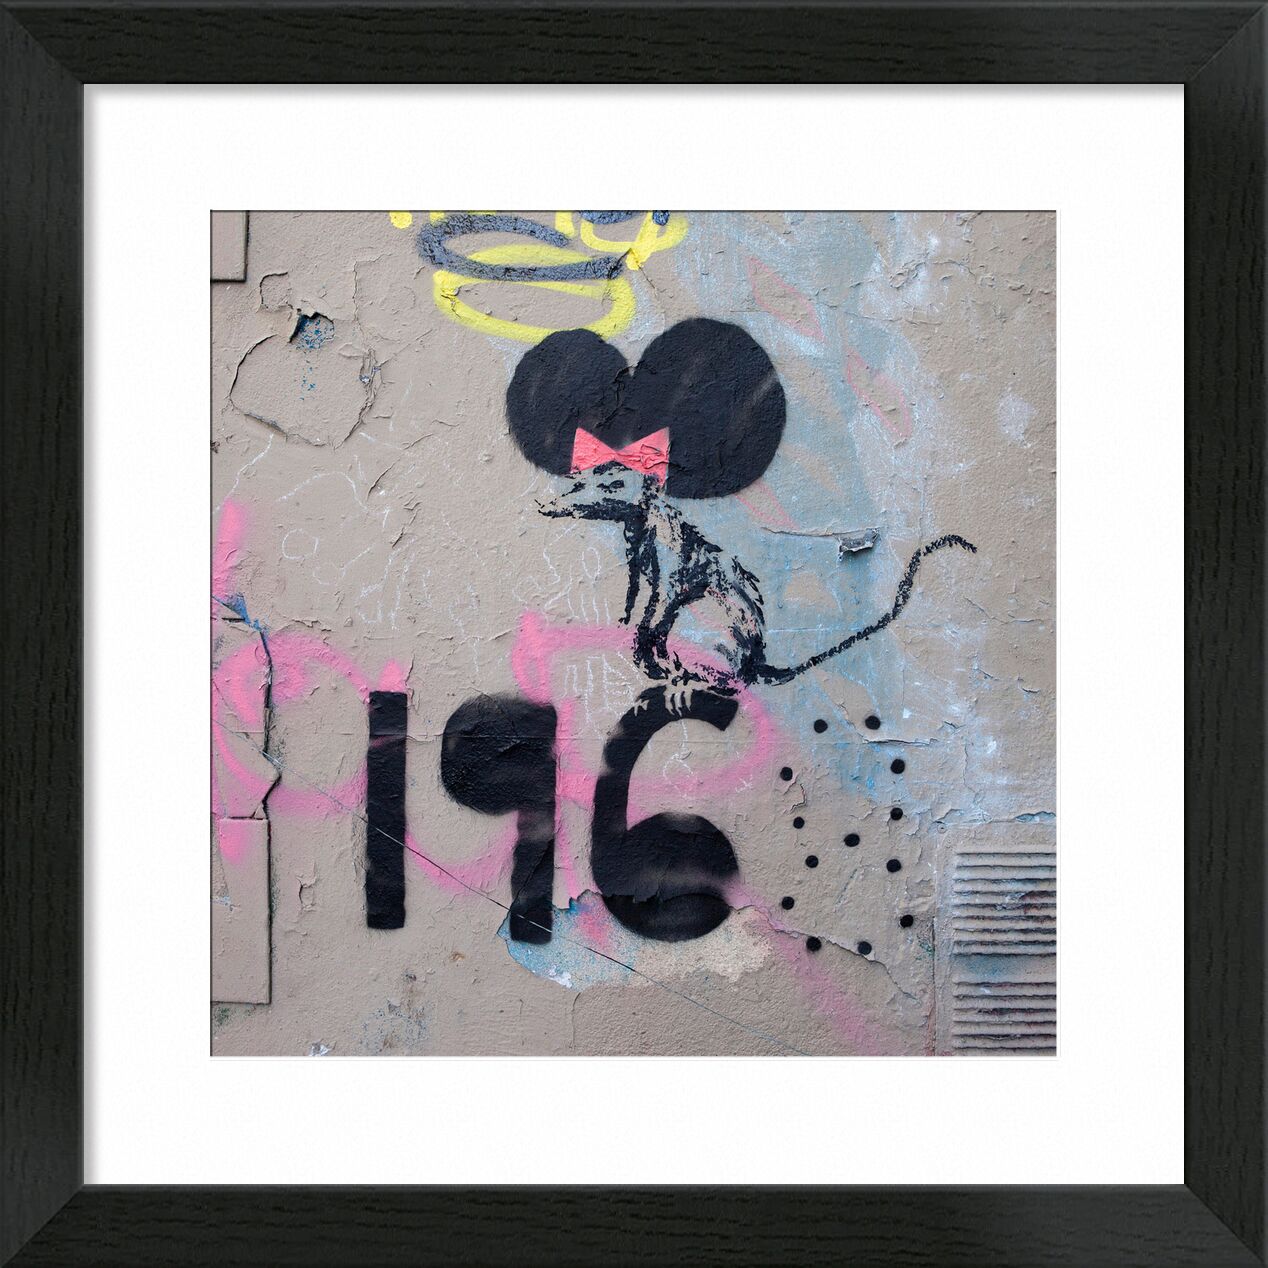 Mai 1968, Die Ratte - Banksy von Bildende Kunst, Prodi Art, Paris, Ratte, Straßenkunst, banky